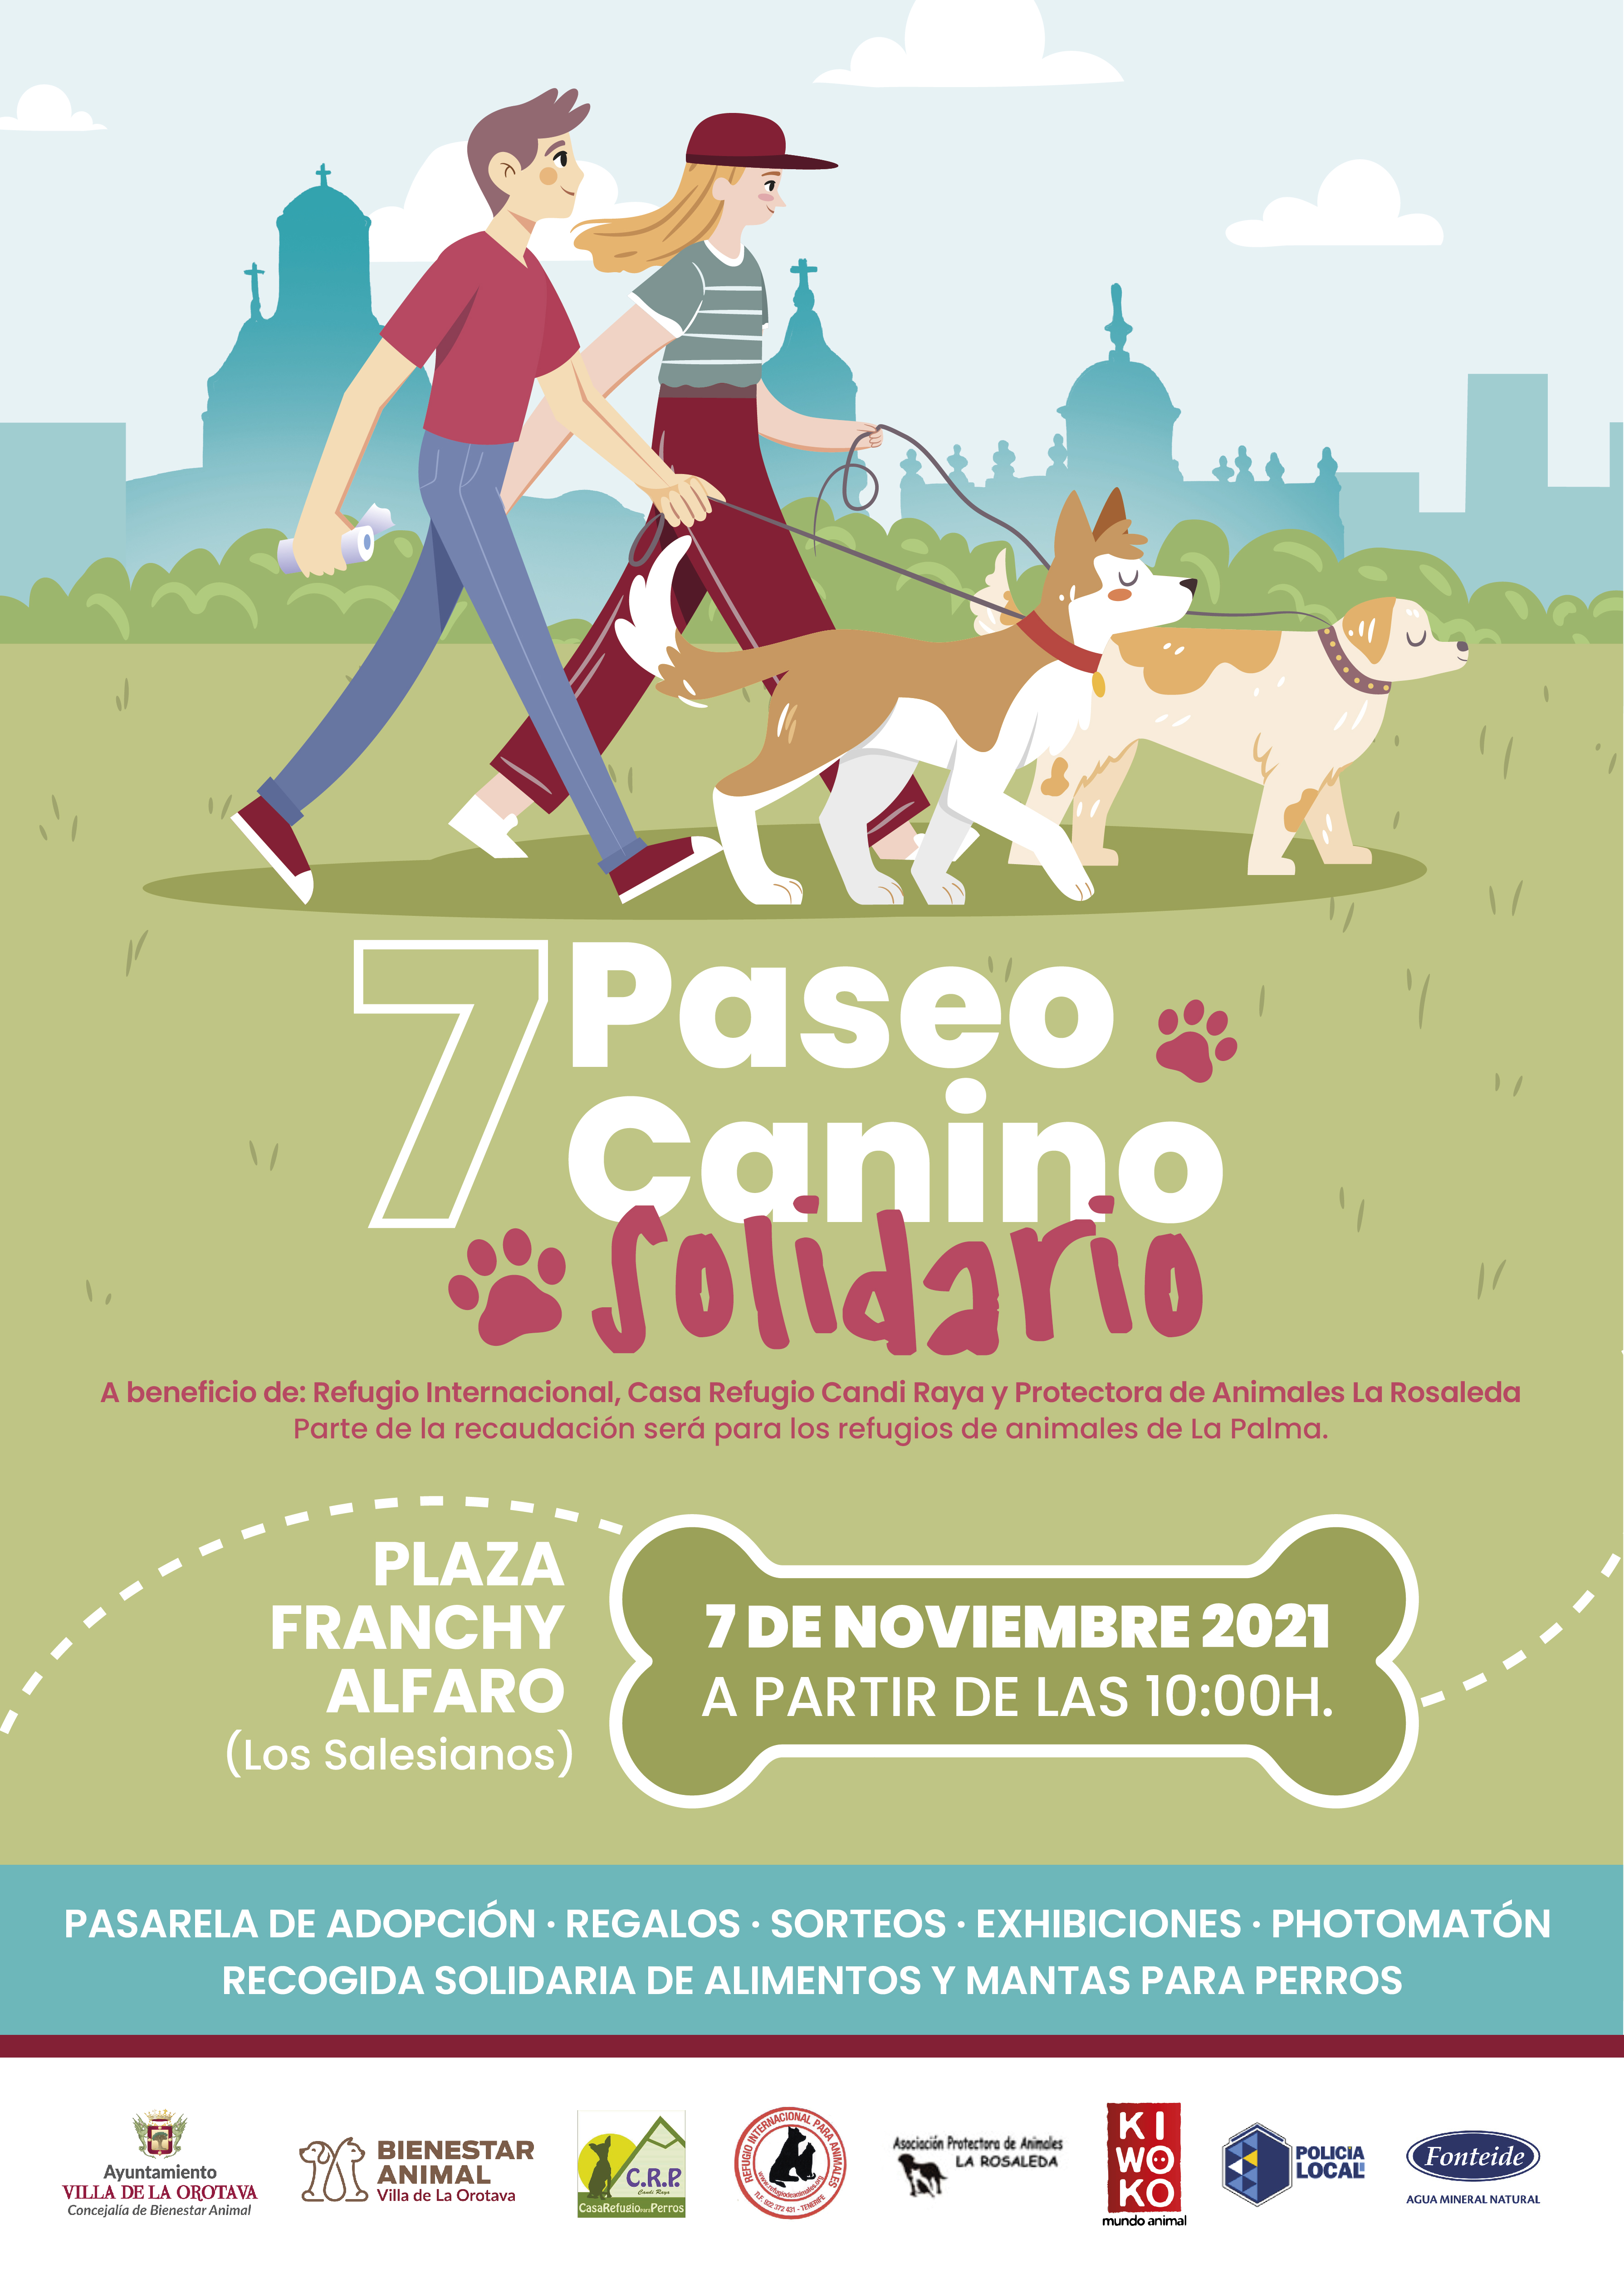 La actividad tendrá lugar el próximo 7 de noviembre, a partir de las 10:00 horas, en la Plaza Franchy Alfaro (Los Salesianos)